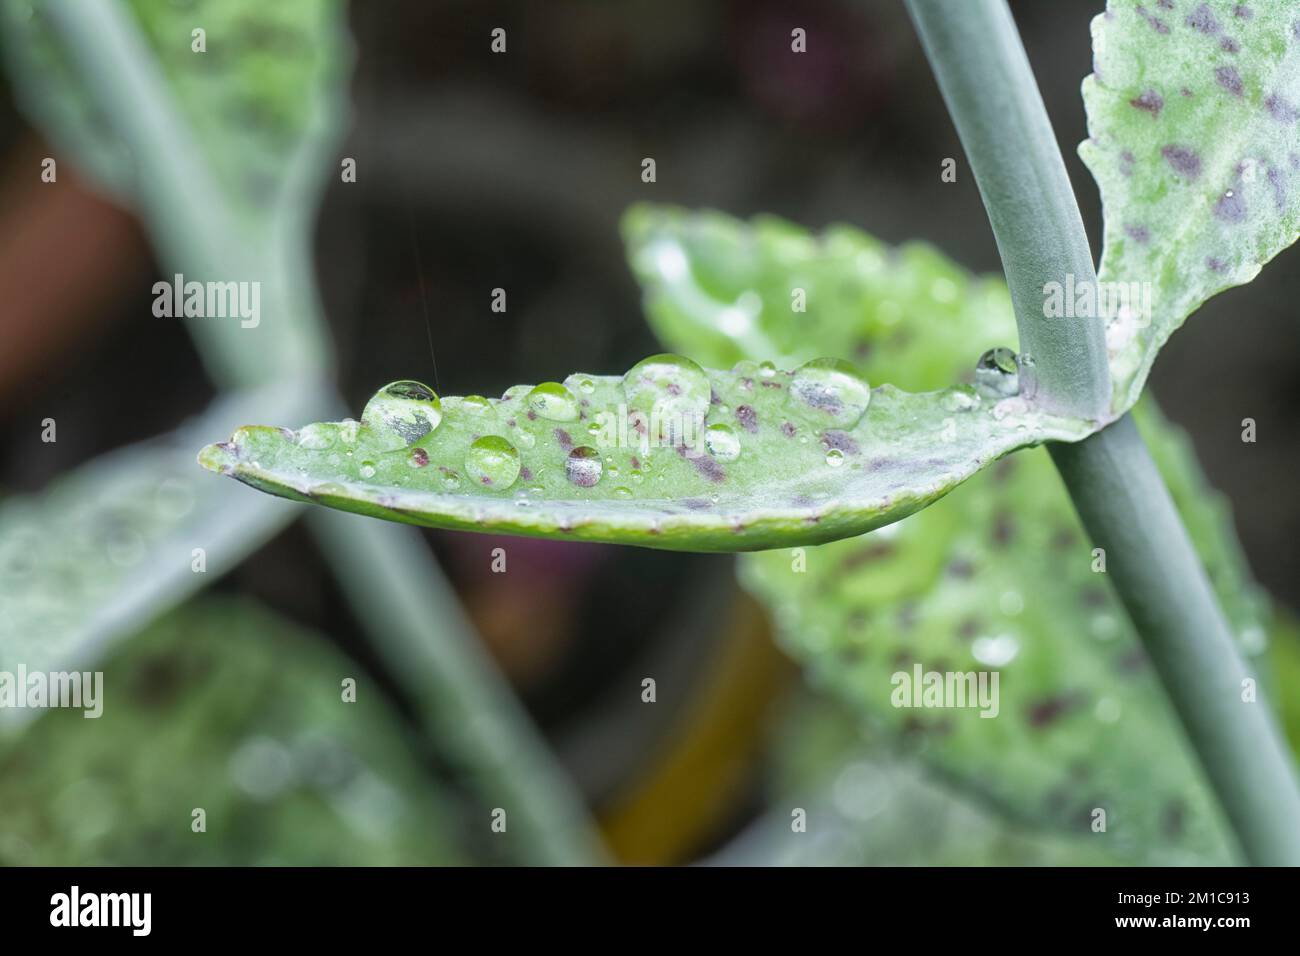 close up of the wet kalanchoe gastonis-bonnieri succulent plant Stock Photo